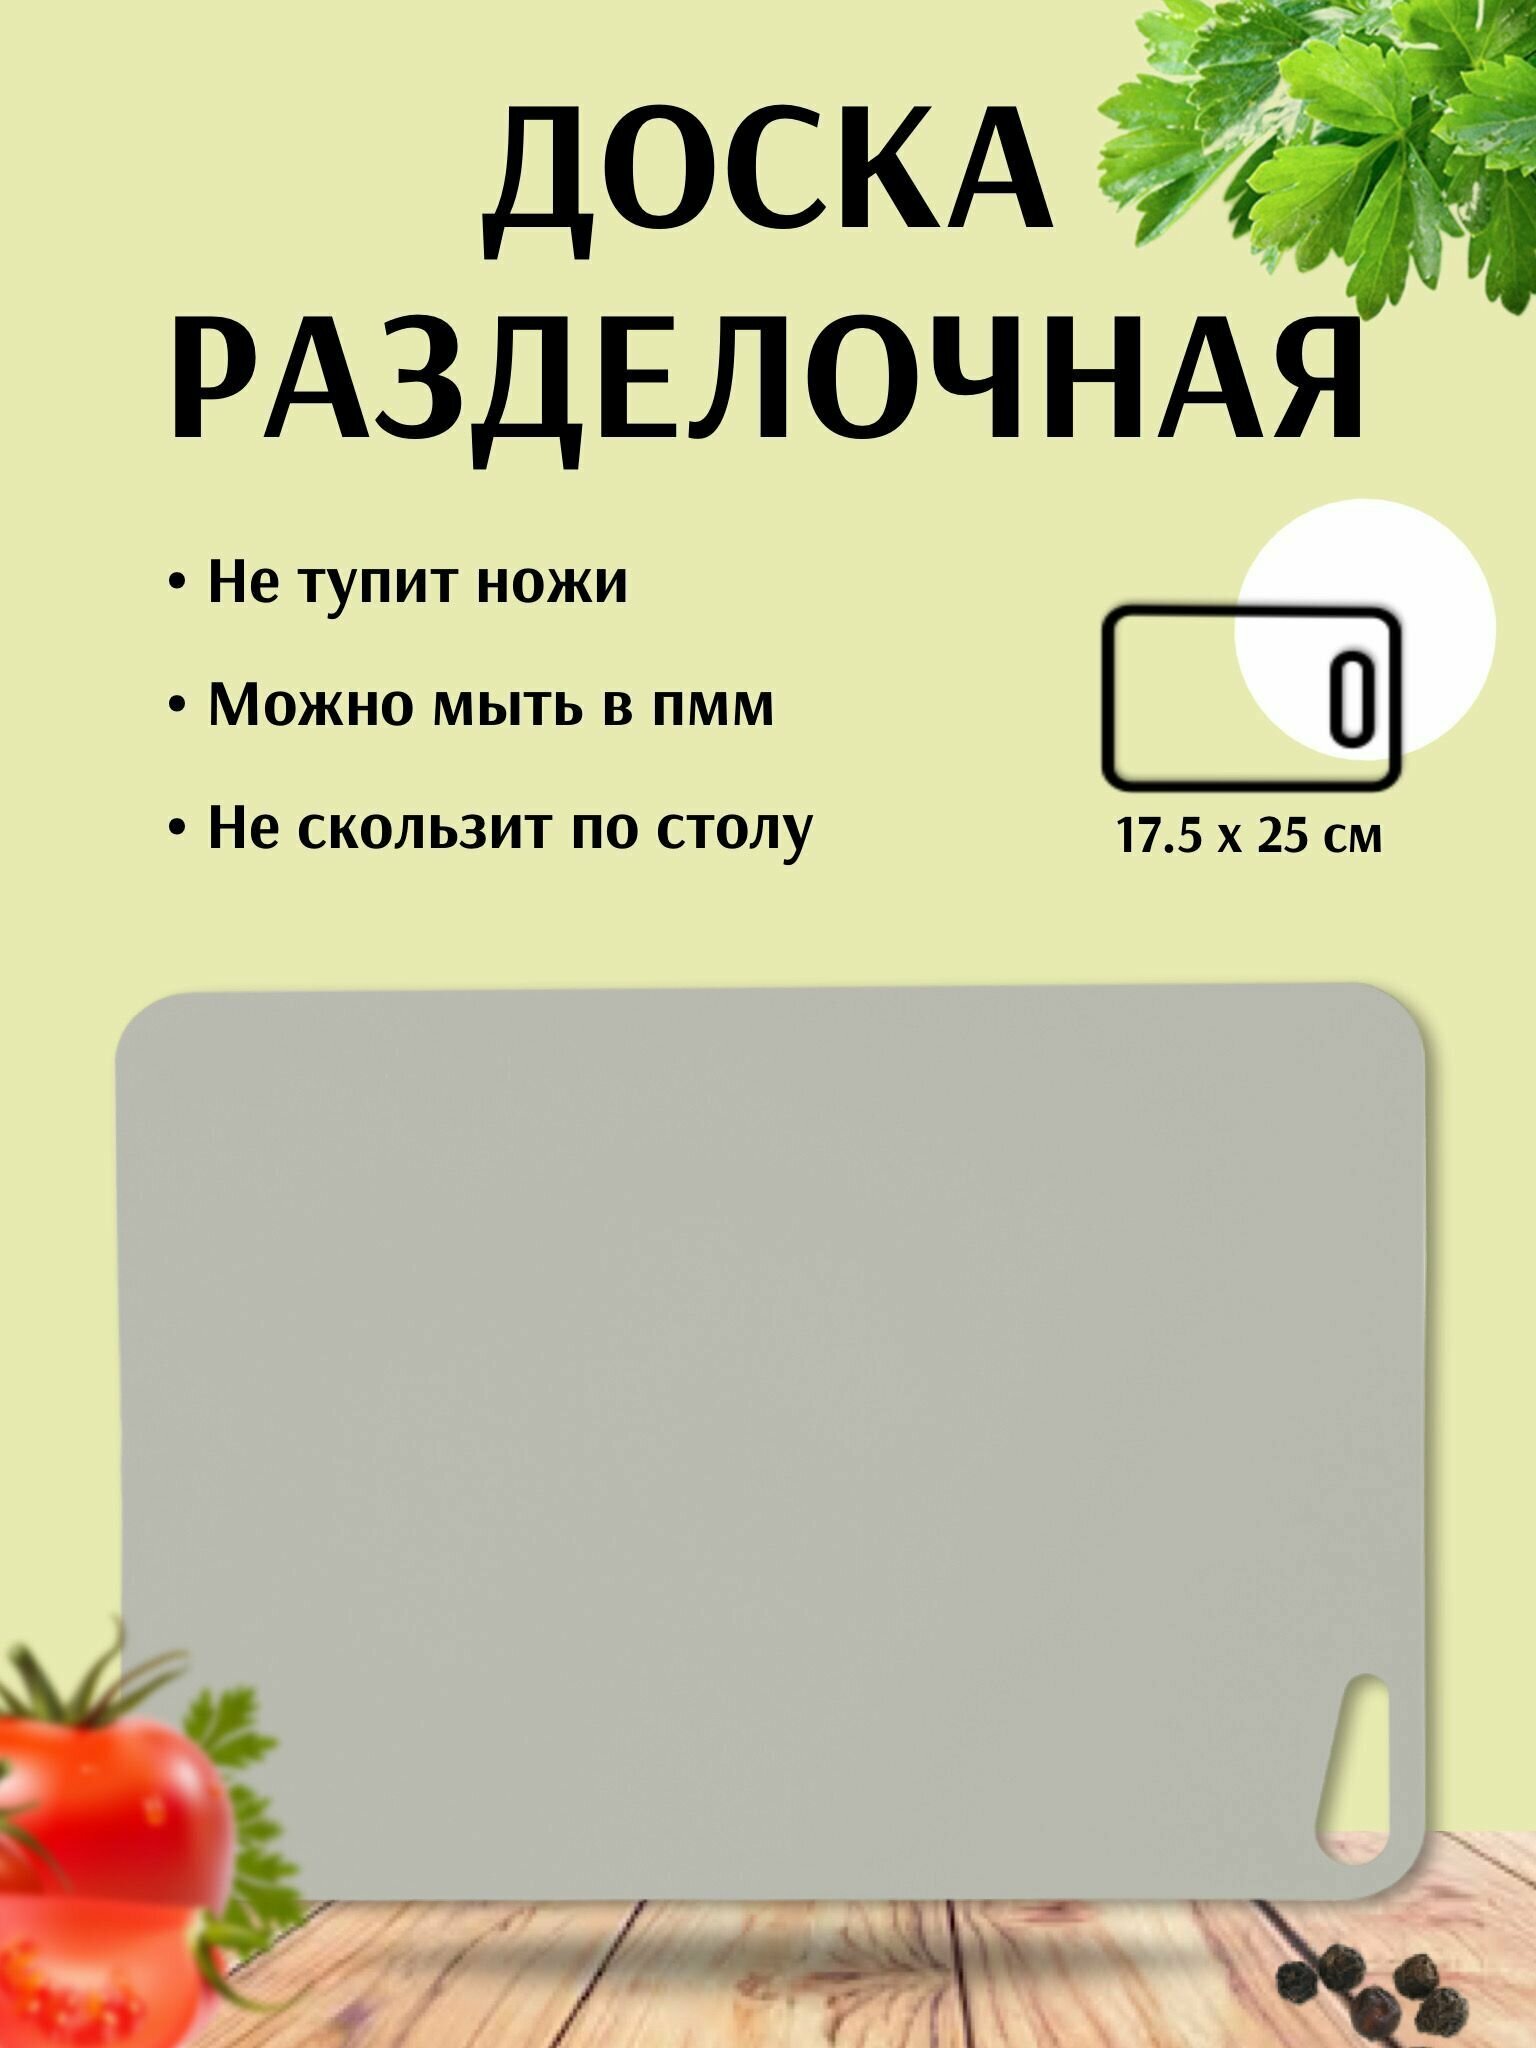 Доска разделочная пластиковая для кухни Martika Грация гибкая 17.5x25 см, пыльно-серый